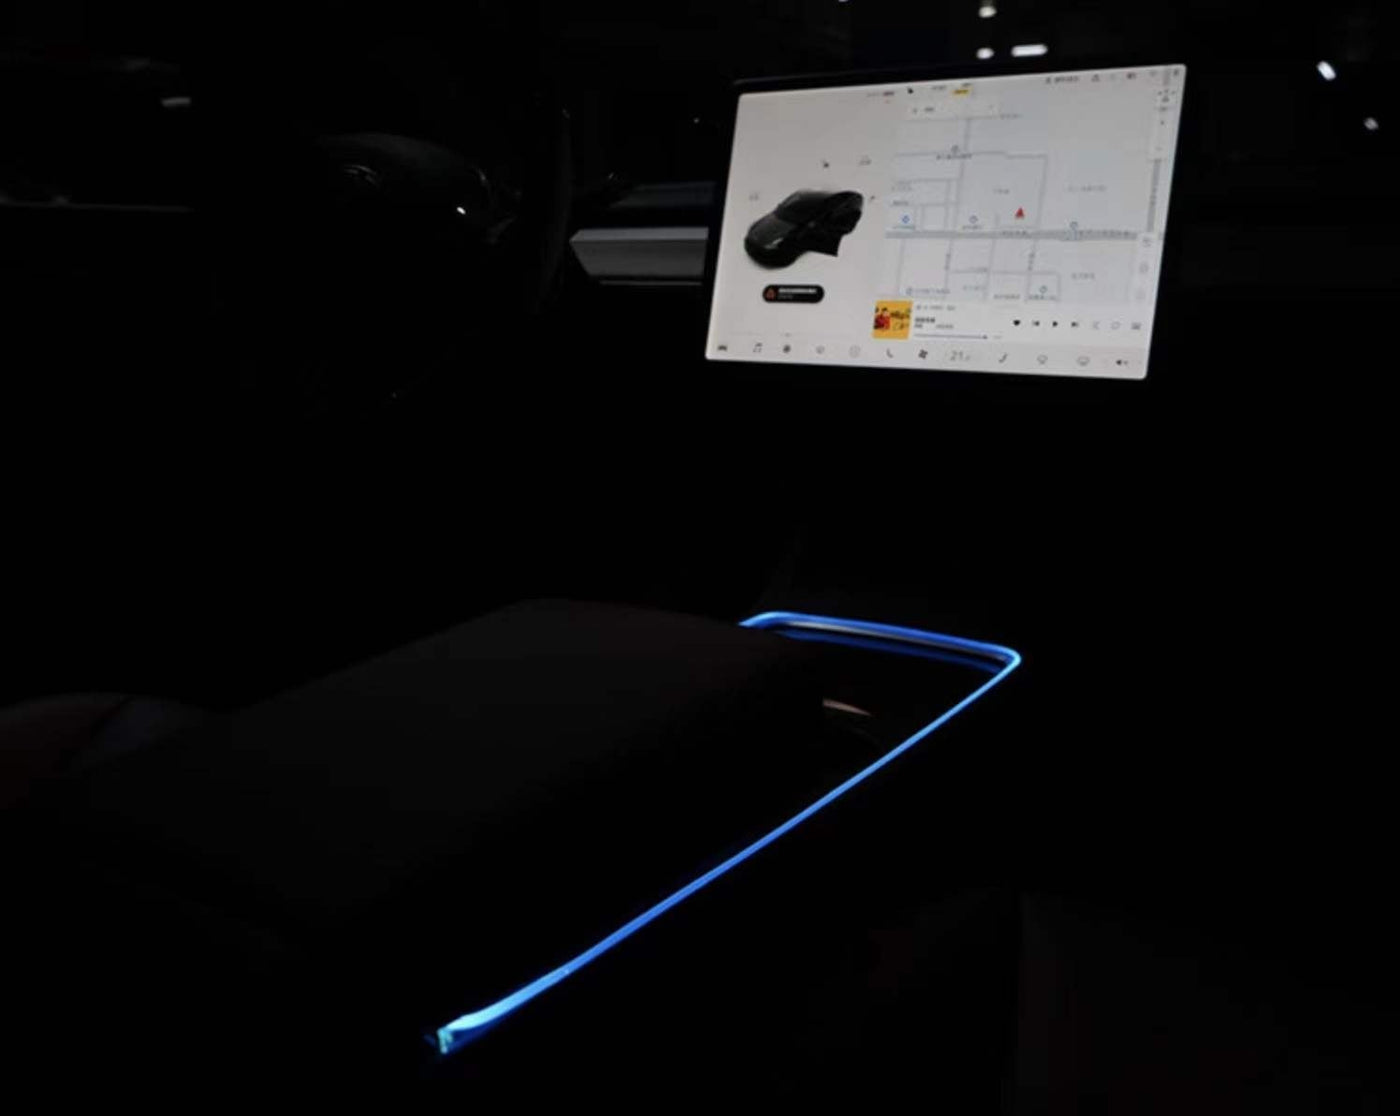 Tesla model 3/Y/X 128 colors ambient light#Tesla #teslaaccesories